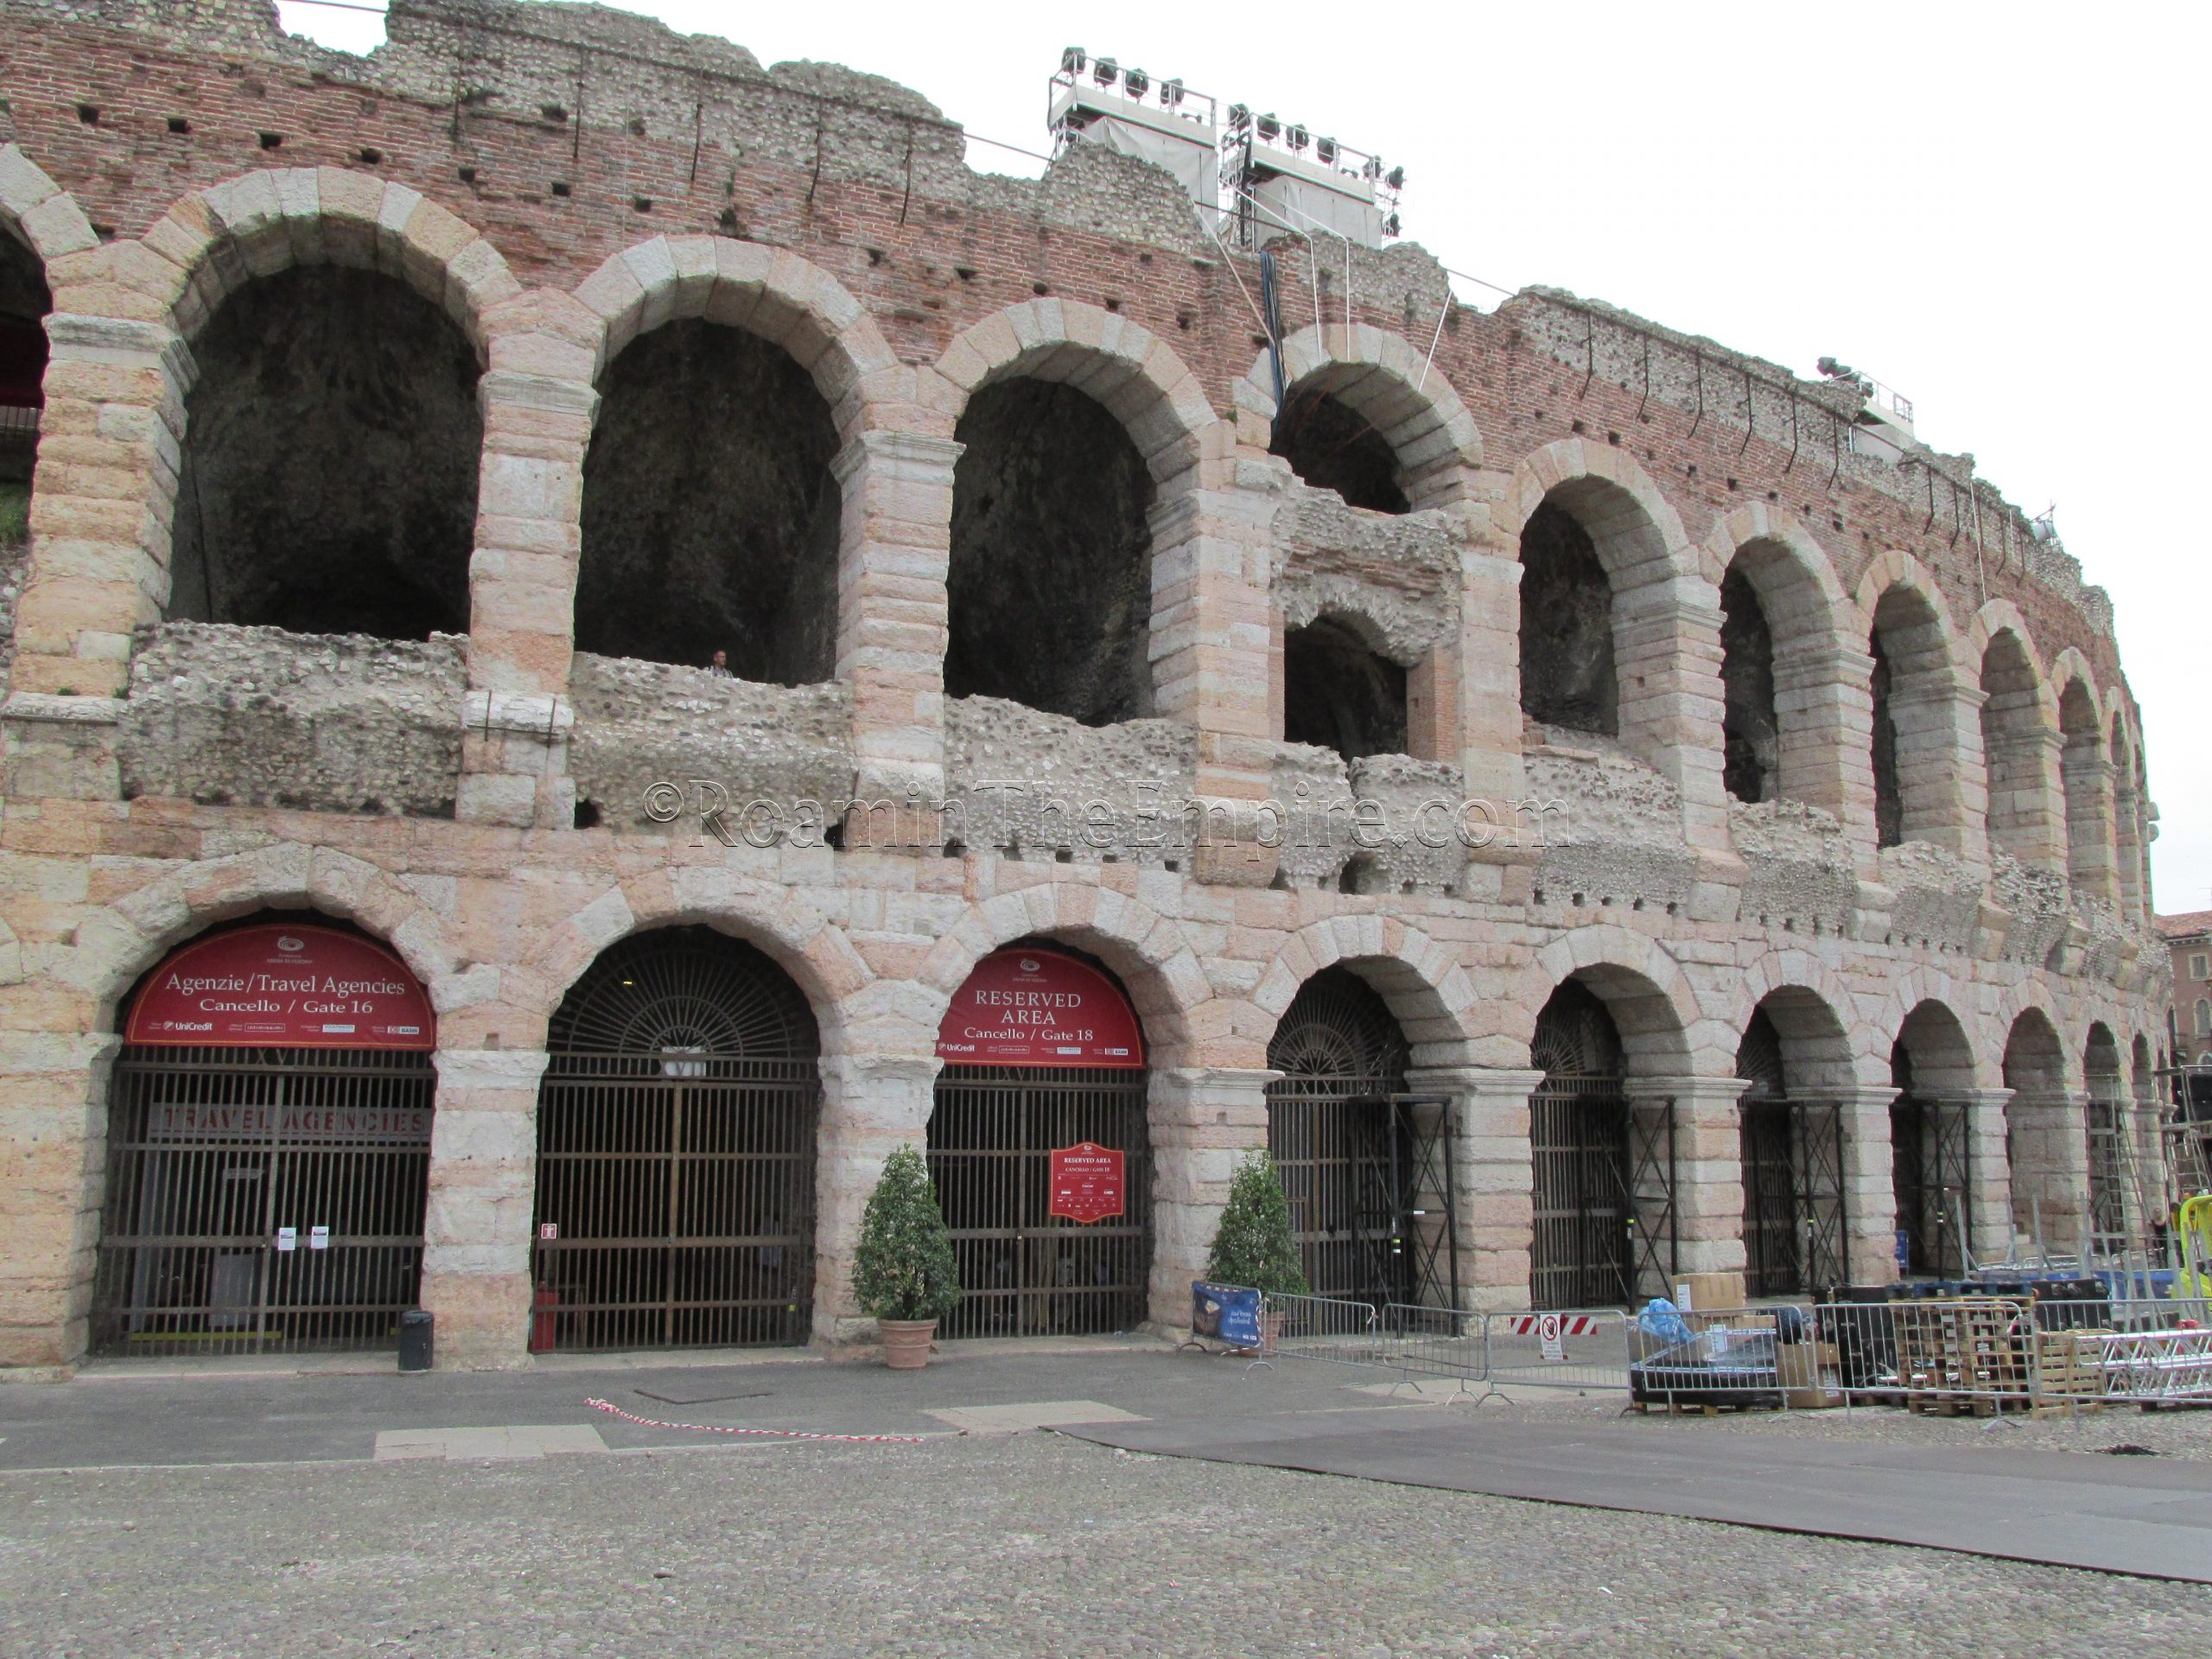 Verona amphitheater.